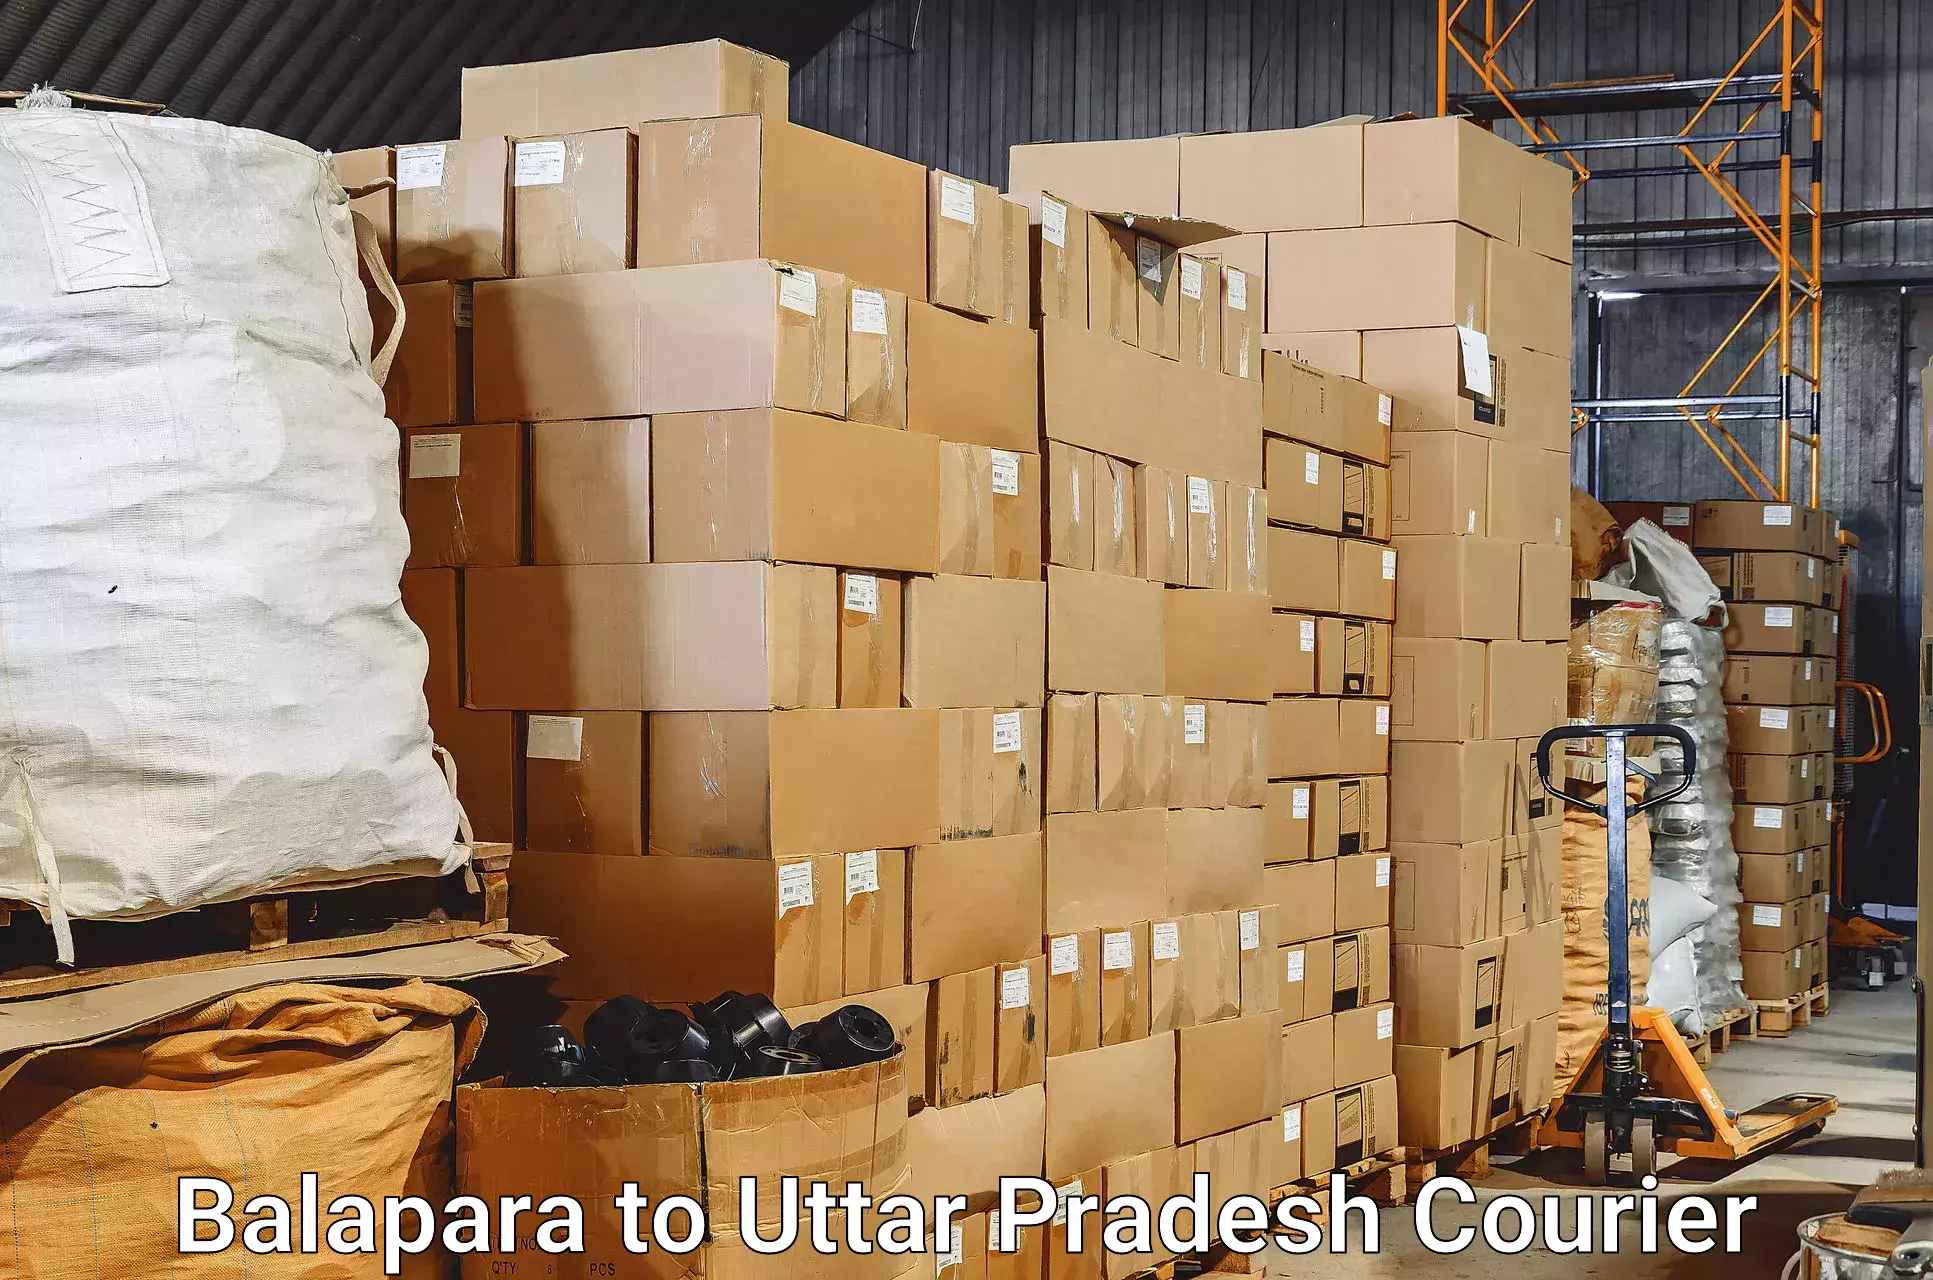 Luggage transport consulting in Balapara to Prayagraj